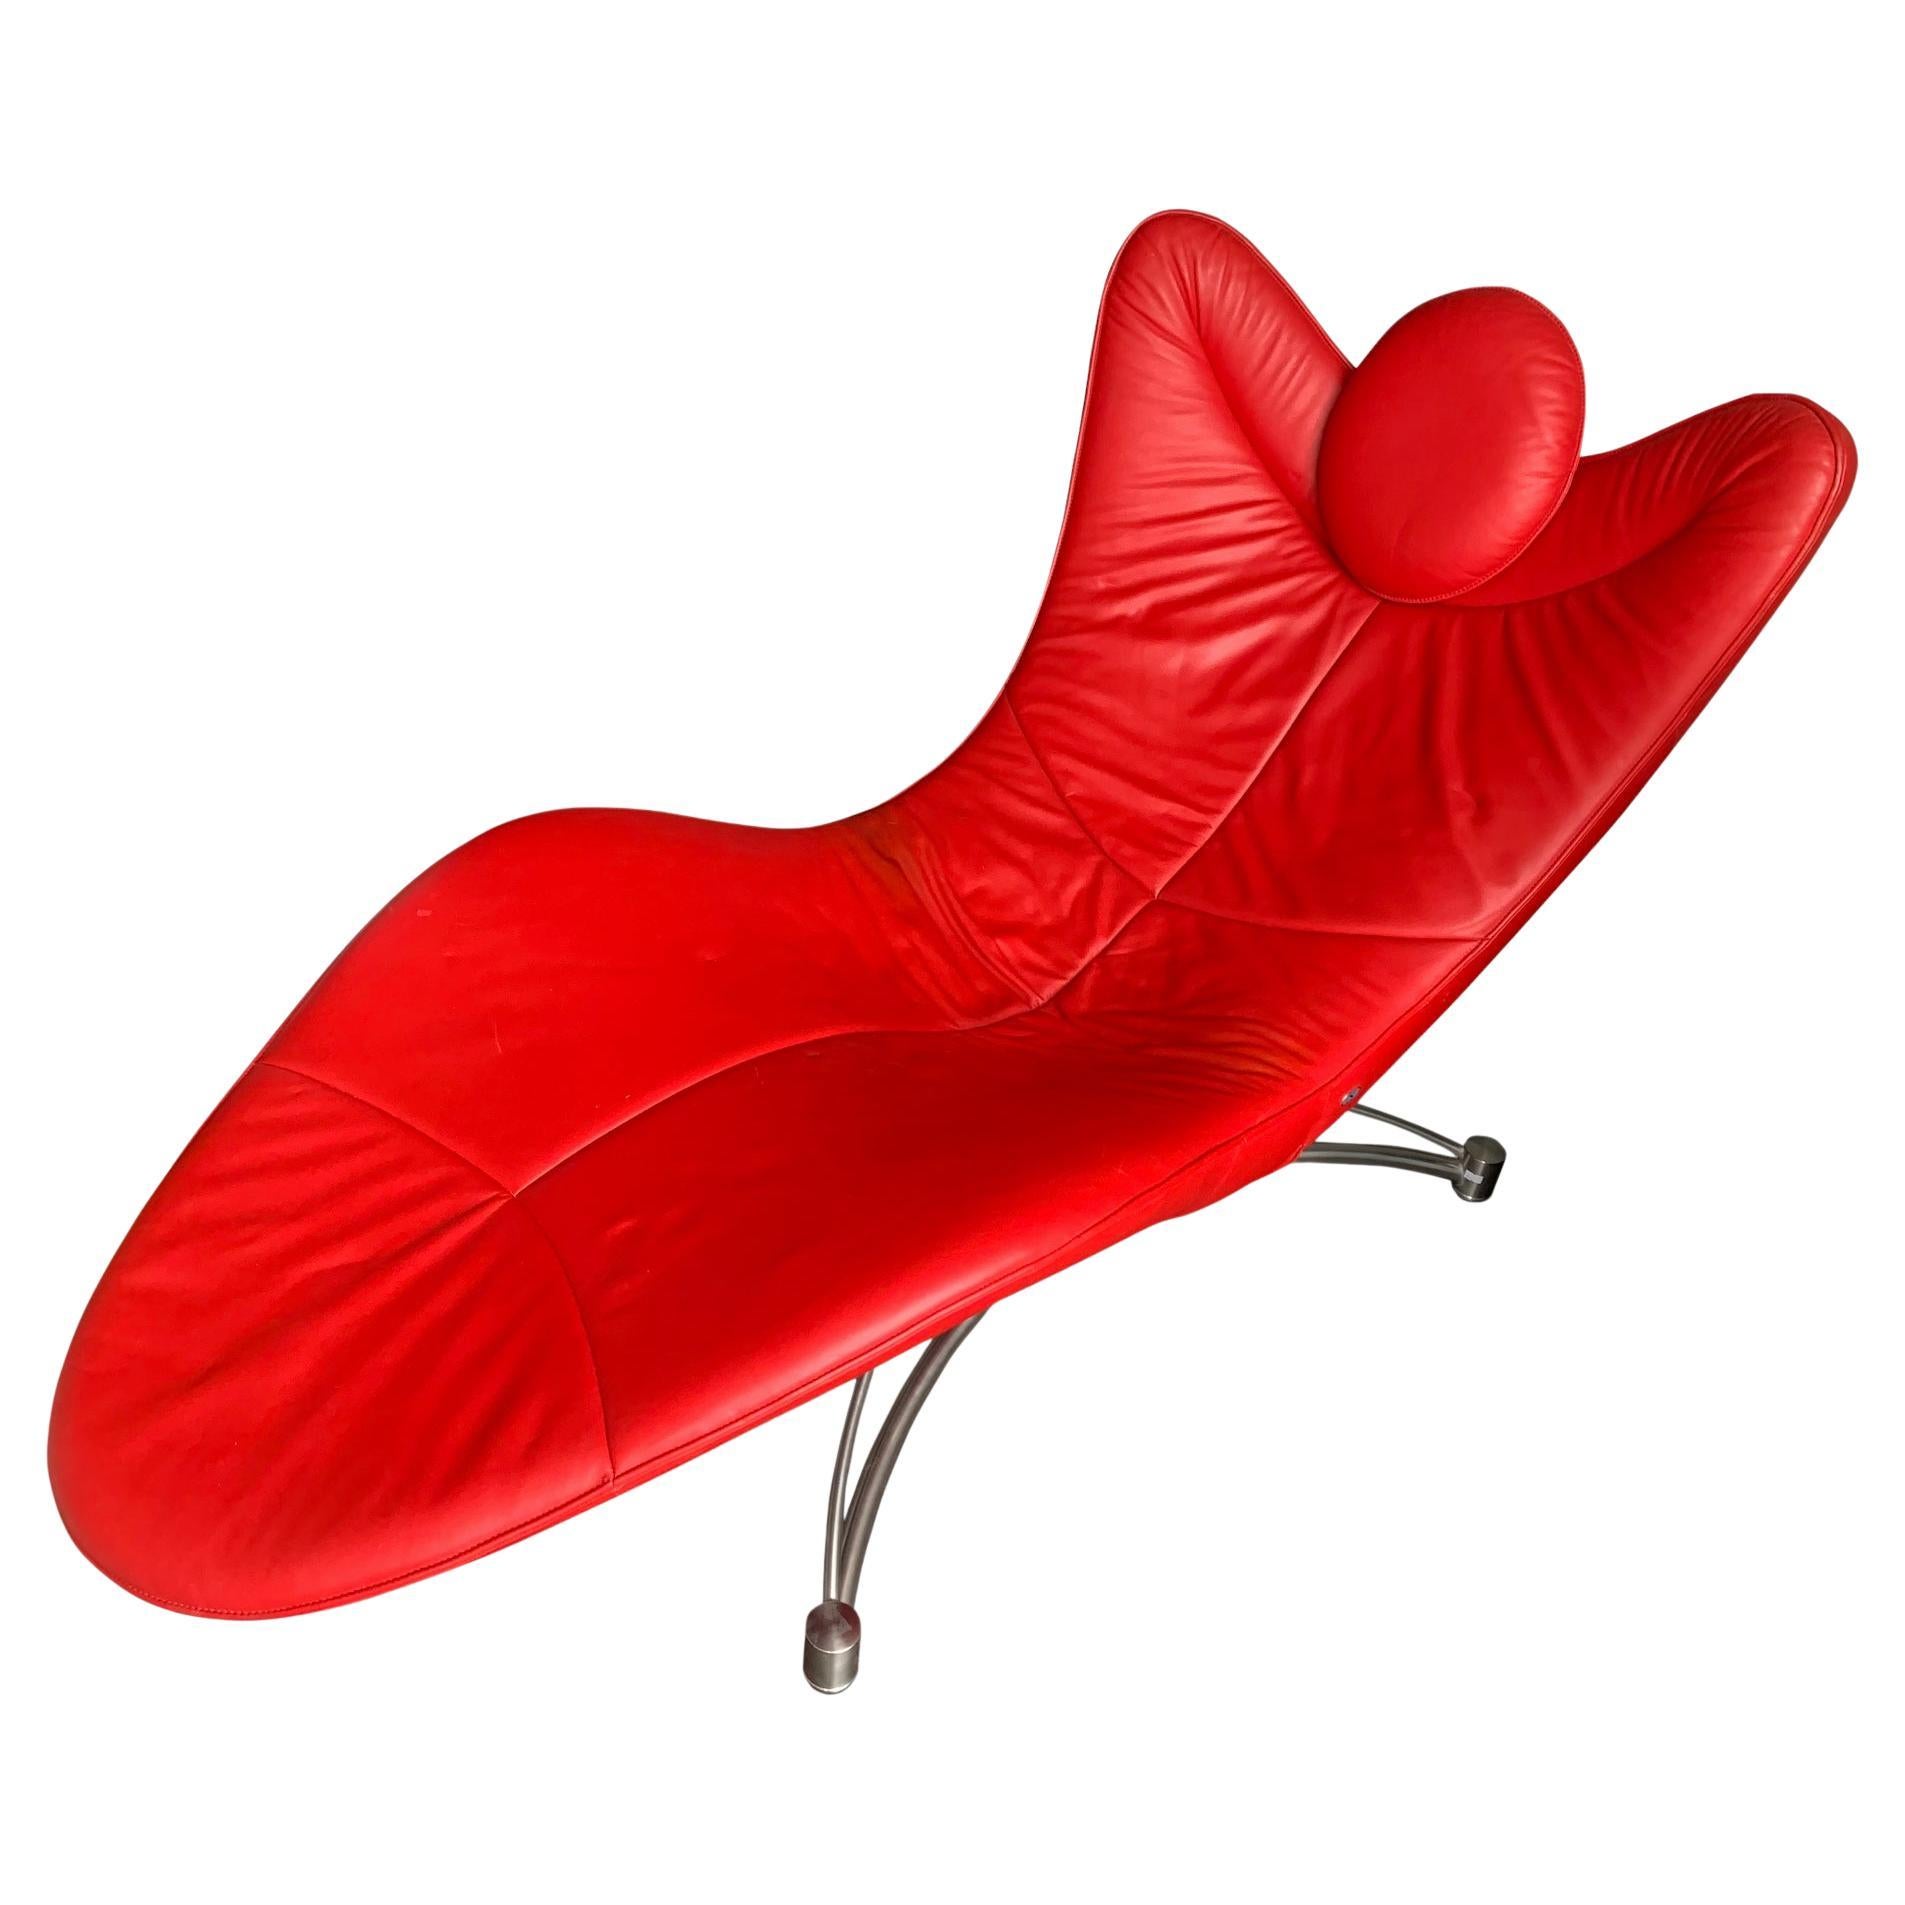 Chaise longue de designer Jane Worthington en cuir et acier rouge Ds 151 